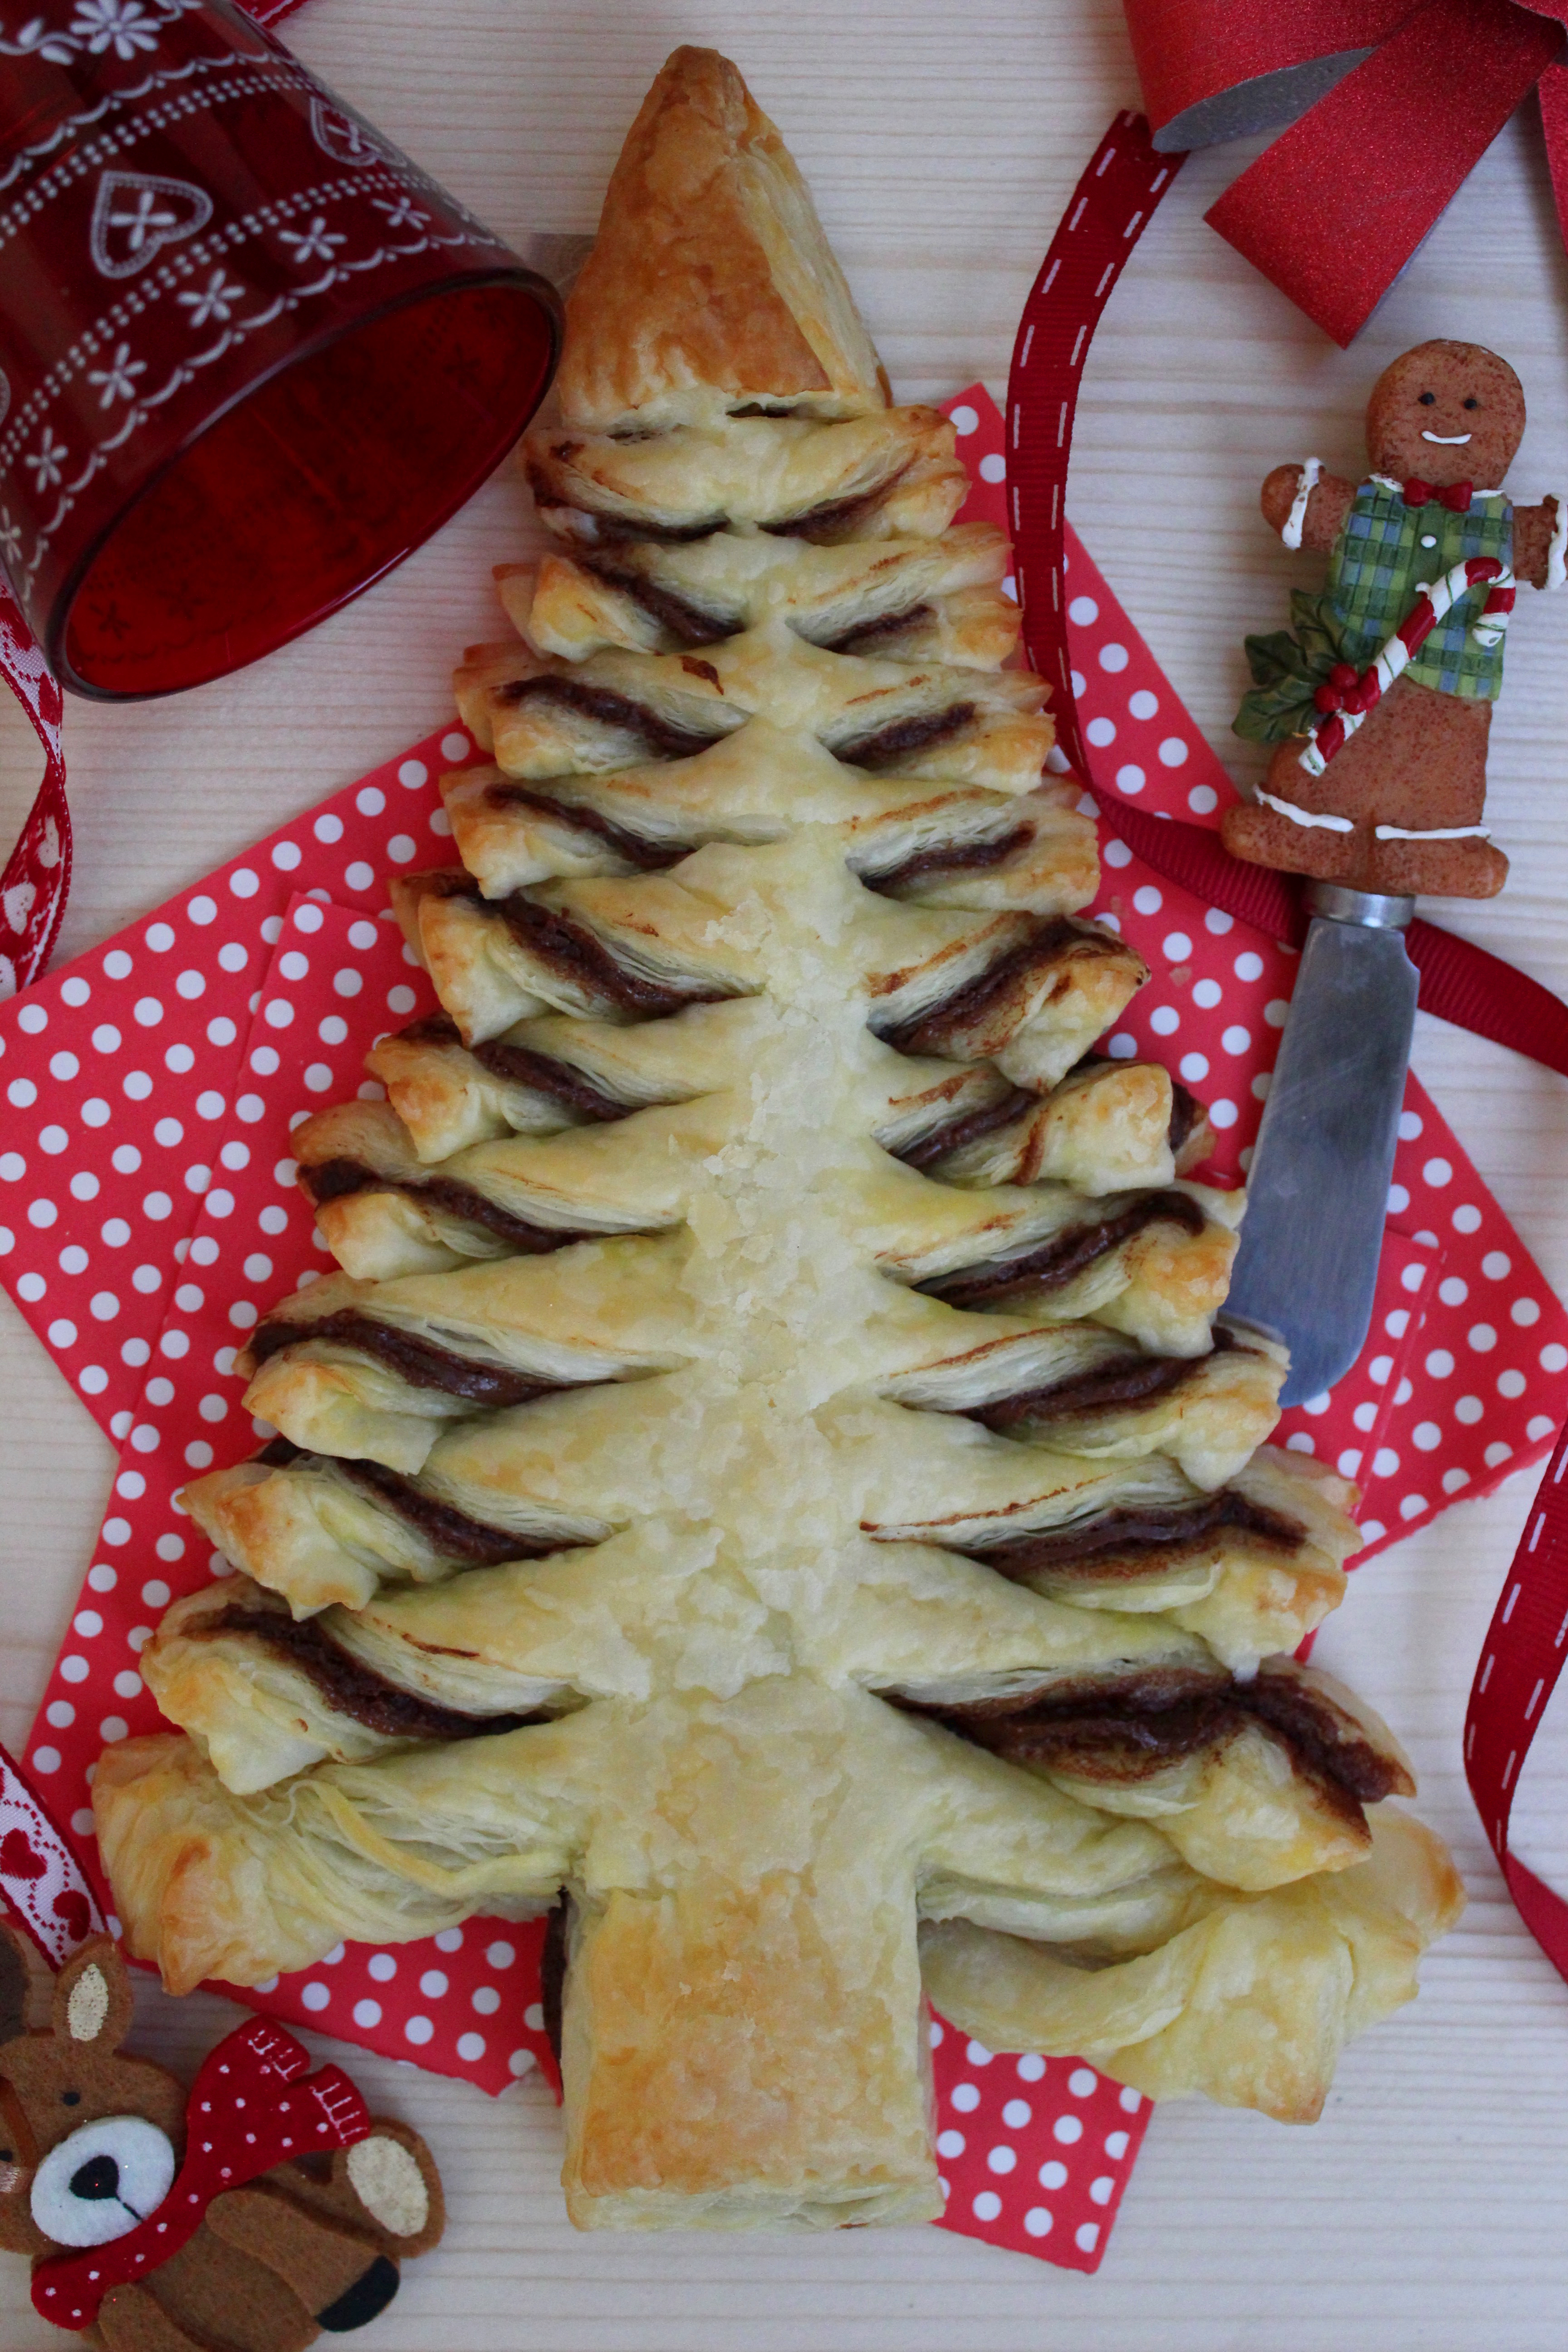 Albero Di Natale Con Pasta Sfoglia.Alberello Di Pasta Sfoglia E Nutella Fornelli Fuori Sede